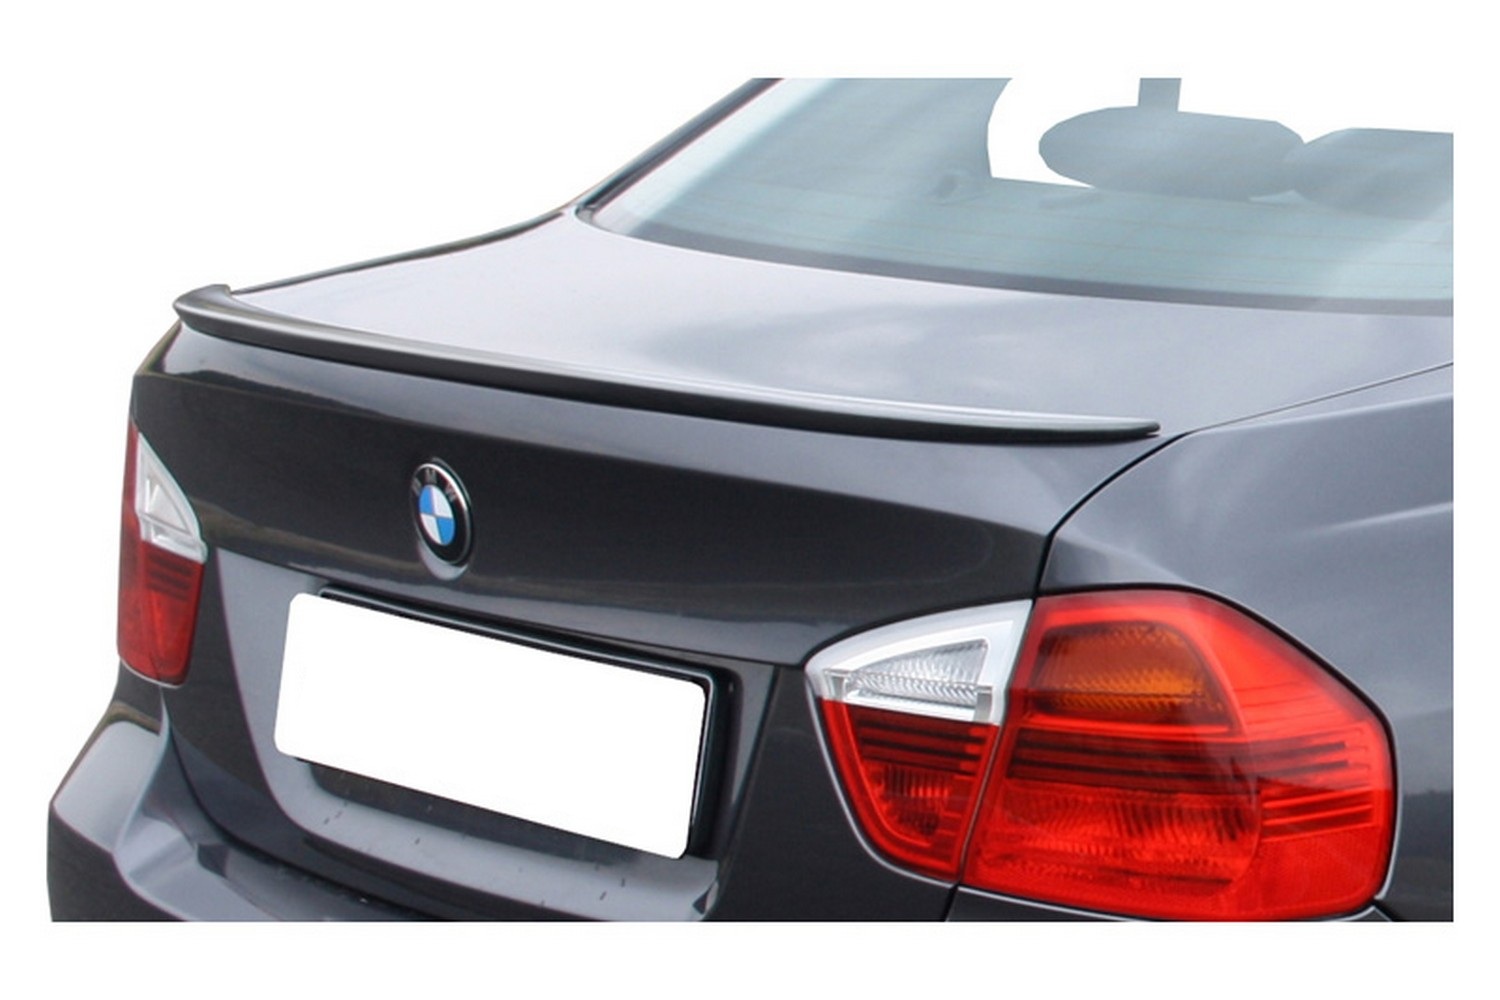 Heckspoiler passend für BMW E90, PSM Spoilerlippe Abrisskante